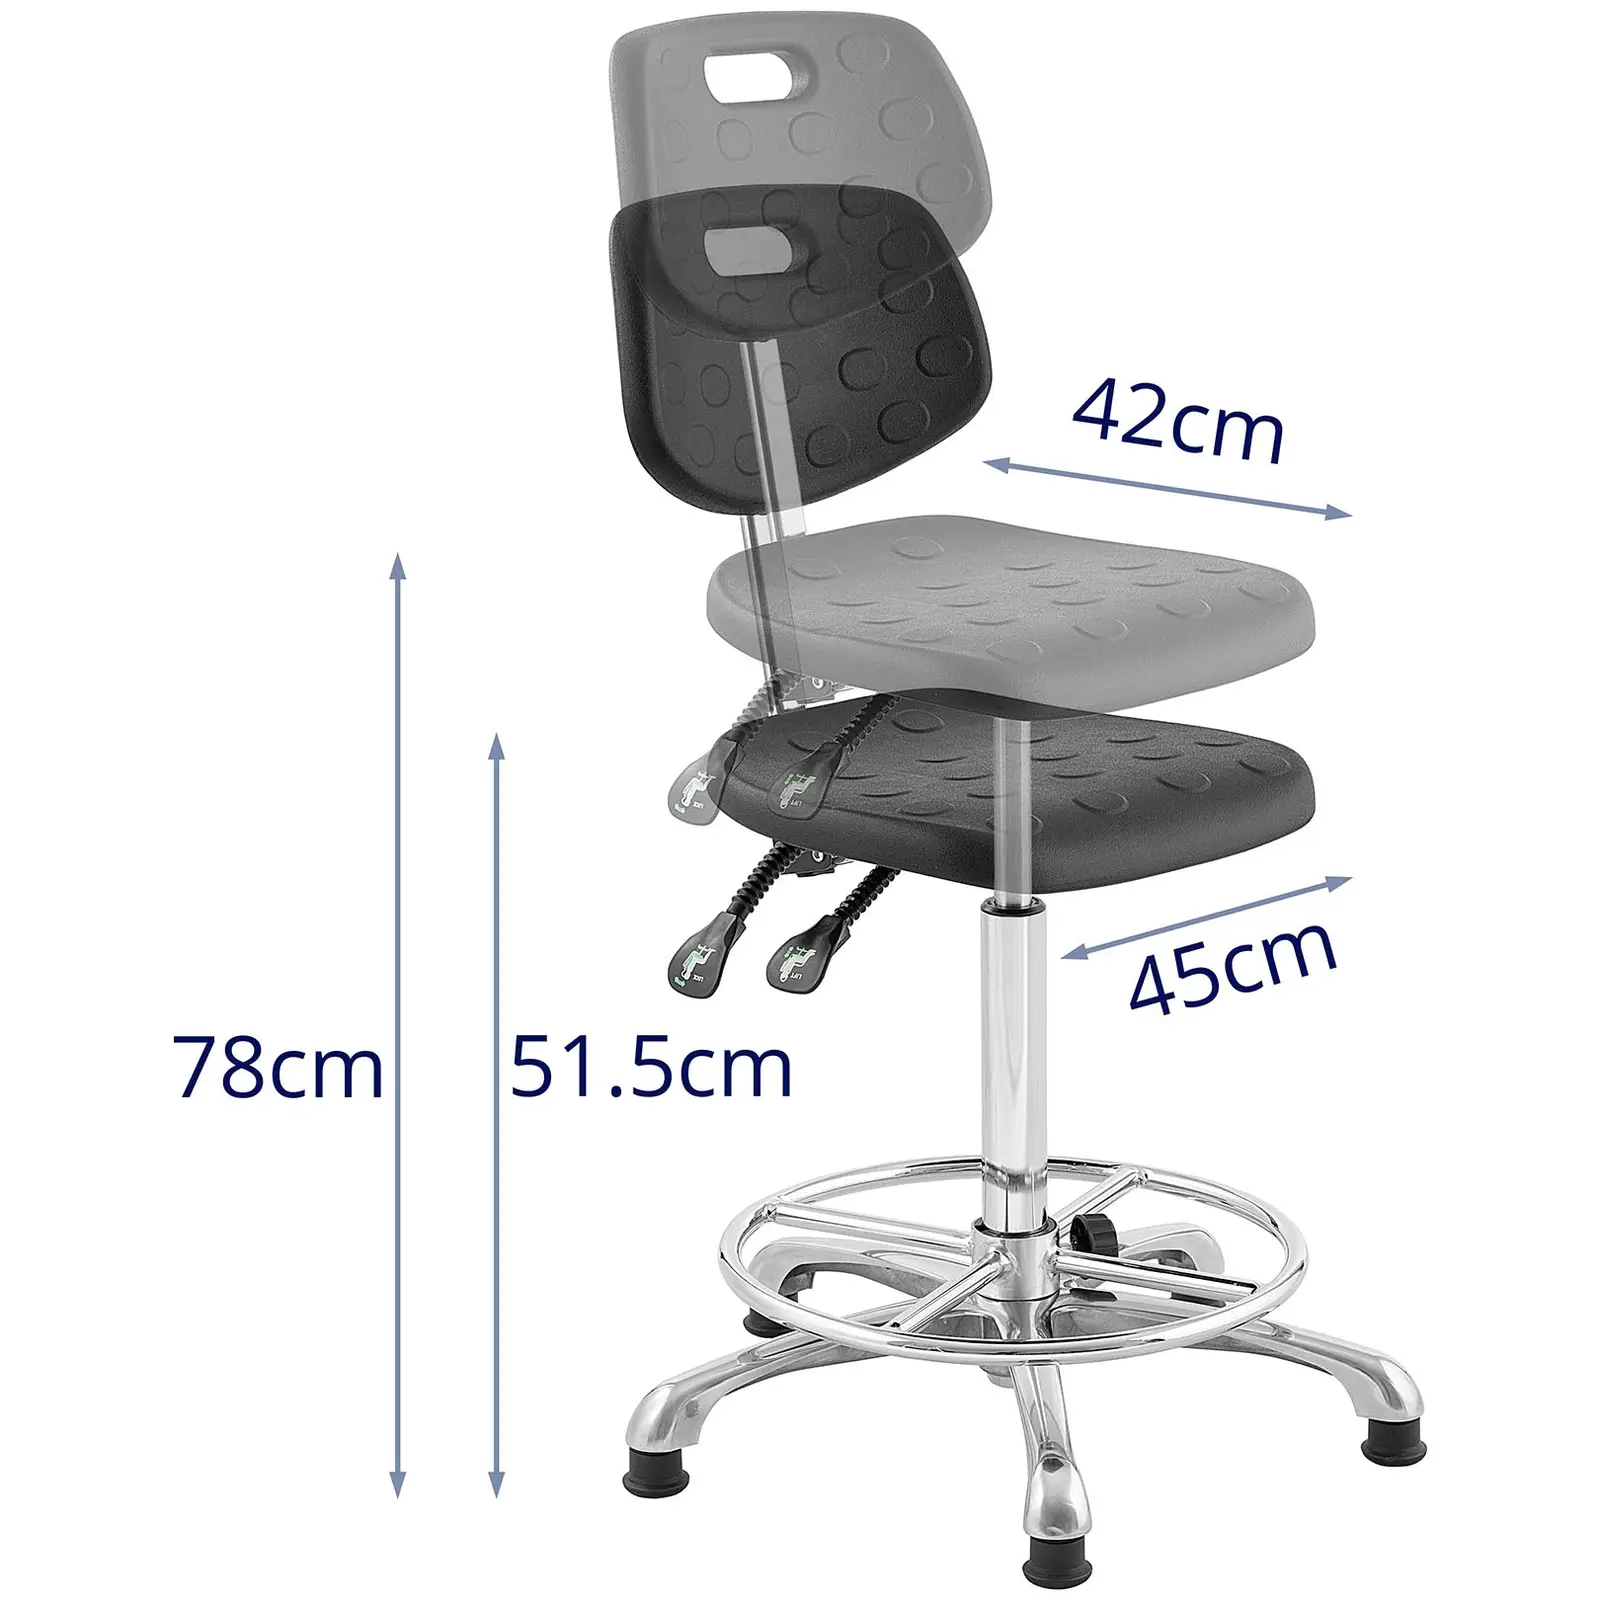 Krzesło przemysłowe - 120 kg - czarne - wysokość 515 - 780 mm